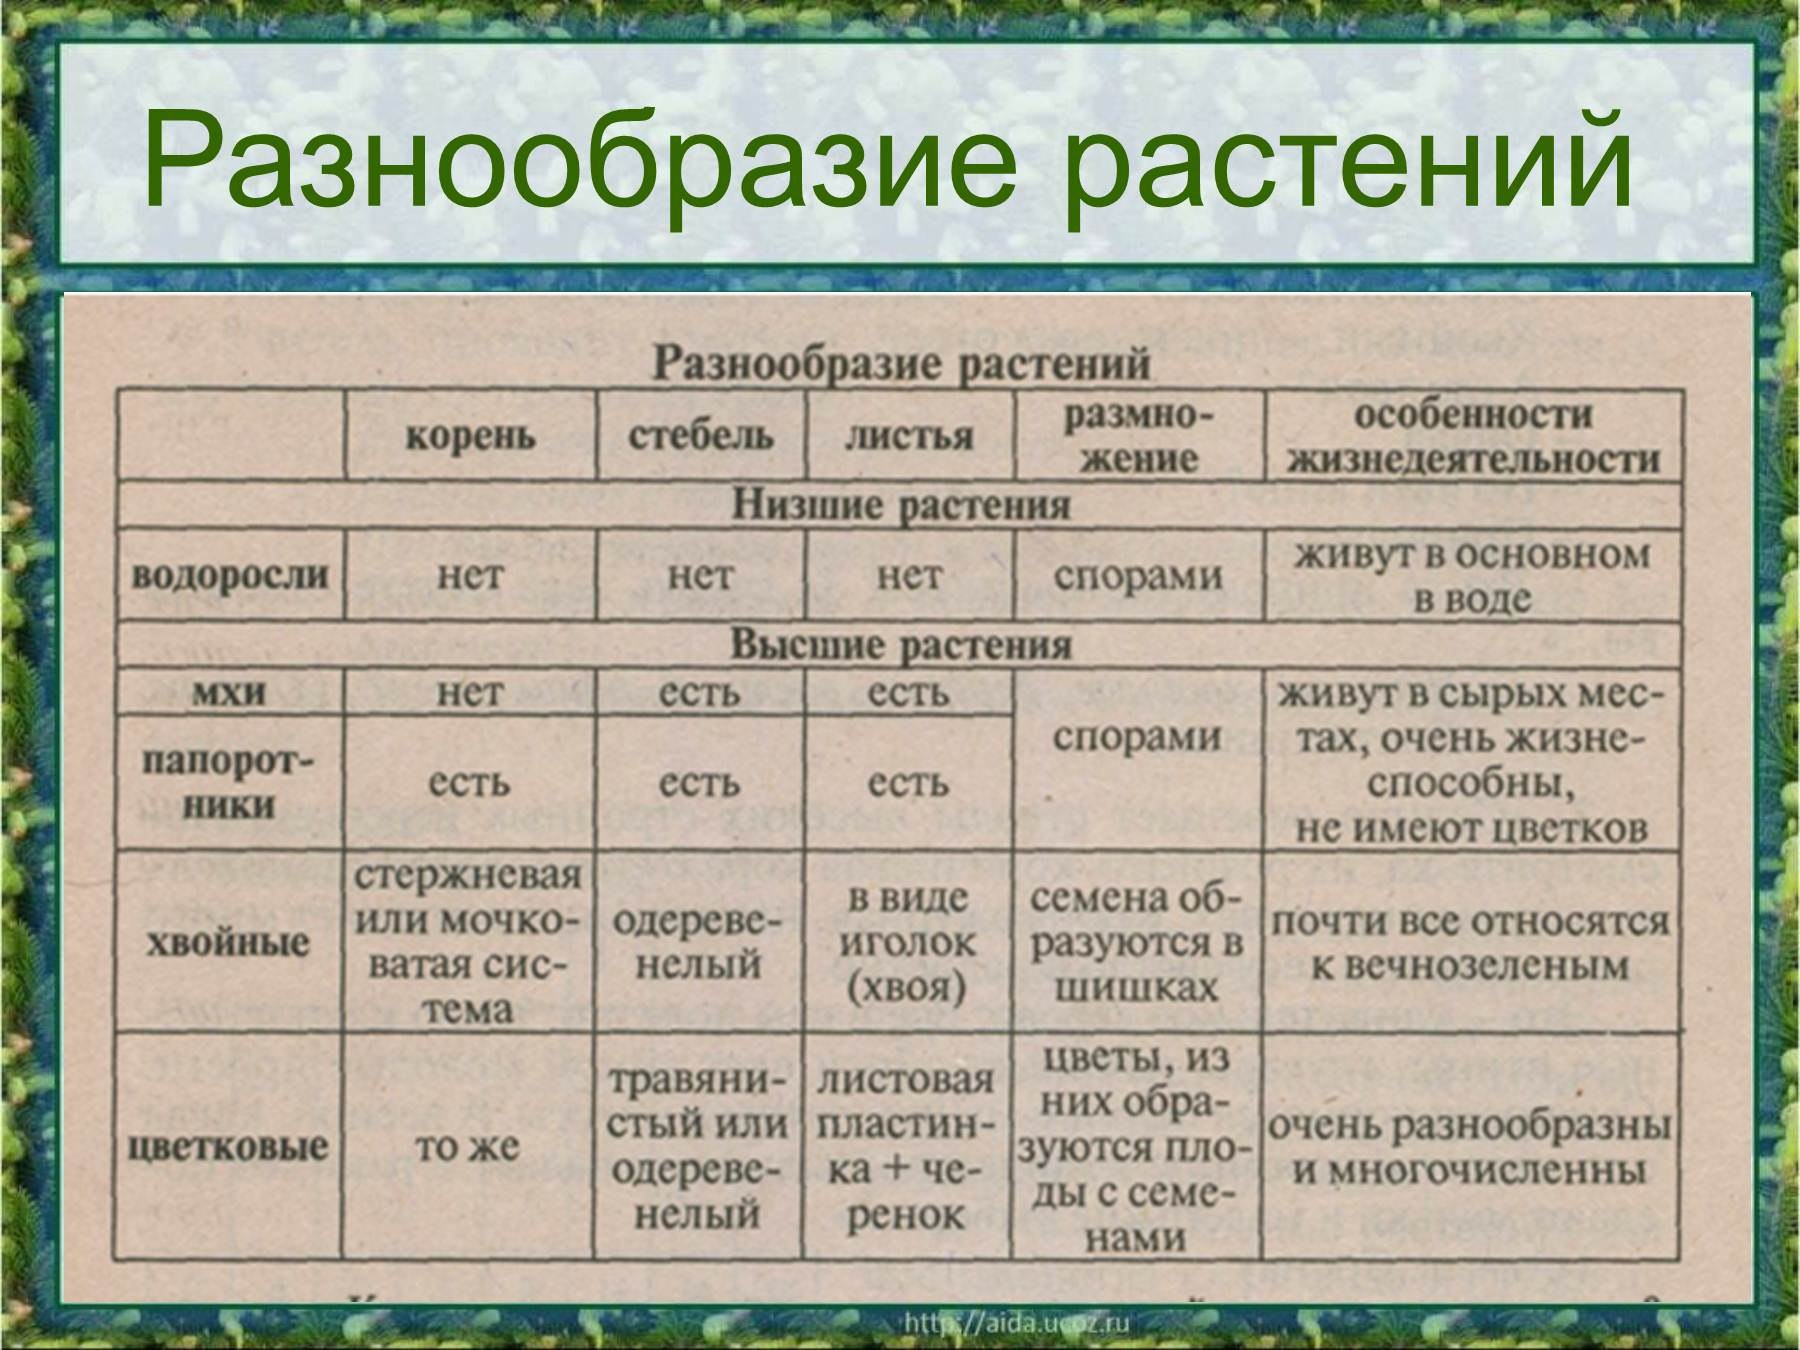 Особенность разнообразия россии. Разнообразие растений. Таблица разнообразие растений. Таблица разнообразие растений 3 класс окружающий мир. Разнообразие растений схема.